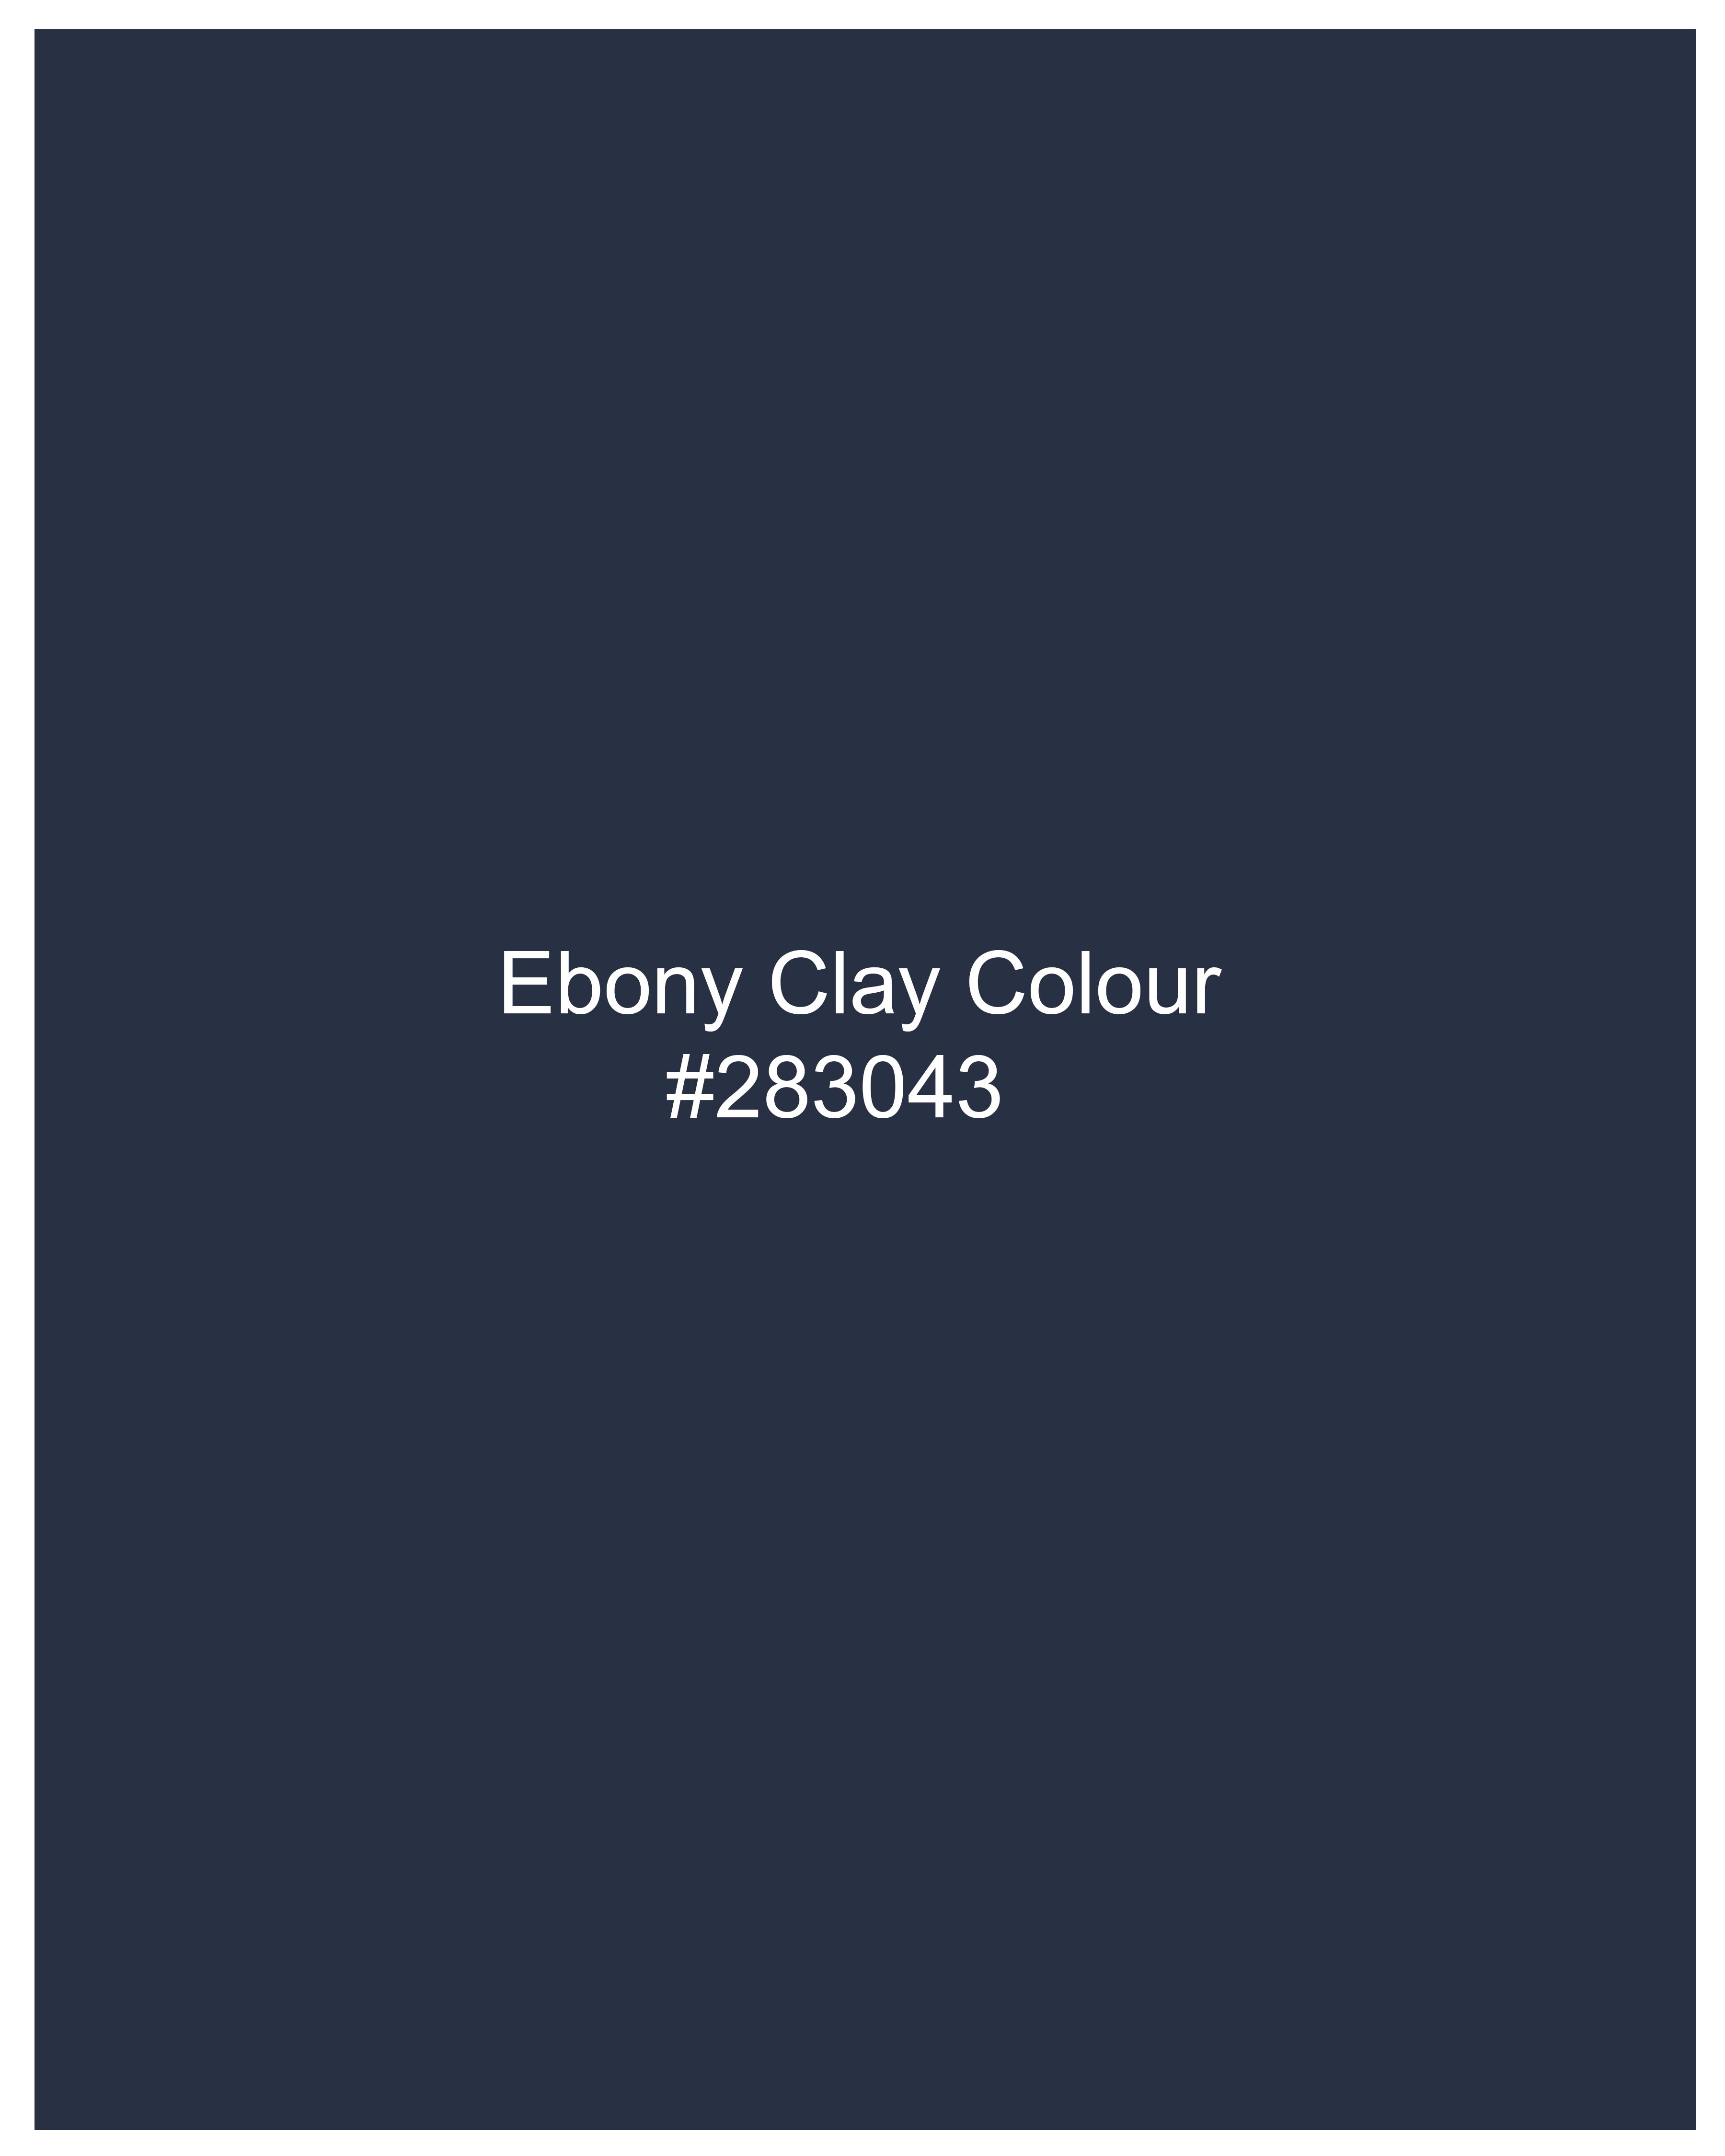 Ebony Clay Navy Blue Chambray Shirt  8660-38,8660-H-38,8660-39,8660-H-39,8660-40,8660-H-40,8660-42,8660-H-42,8660-44,8660-H-44,8660-46,8660-H-46,8660-48,8660-H-48,8660-50,8660-H-50,8660-52,8660-H-52